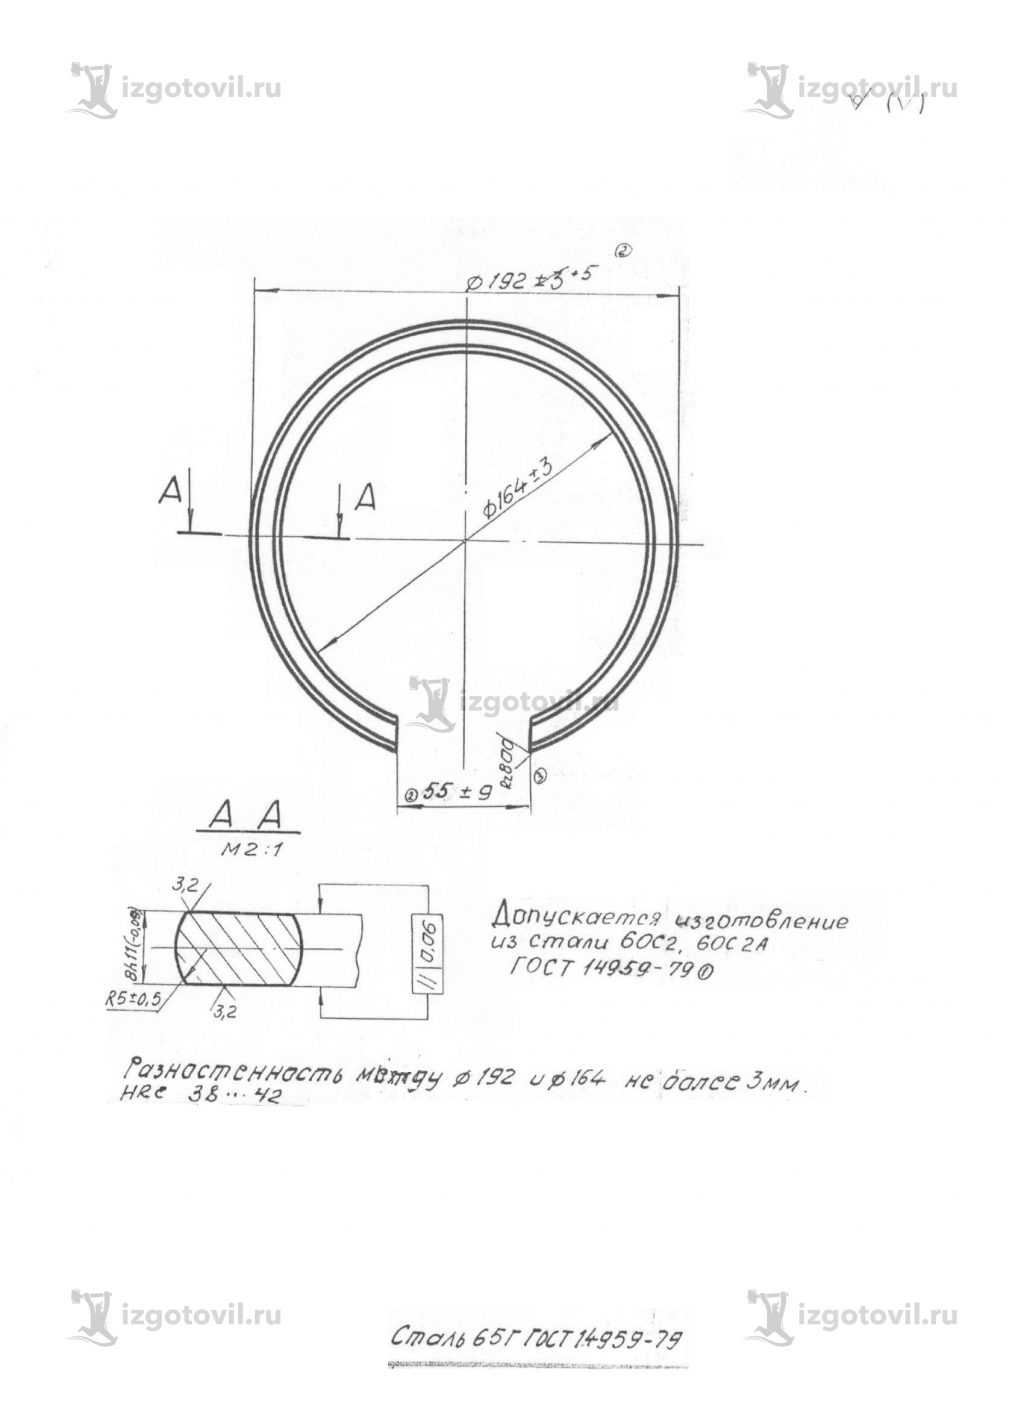 Металлообработка: изготовление колец